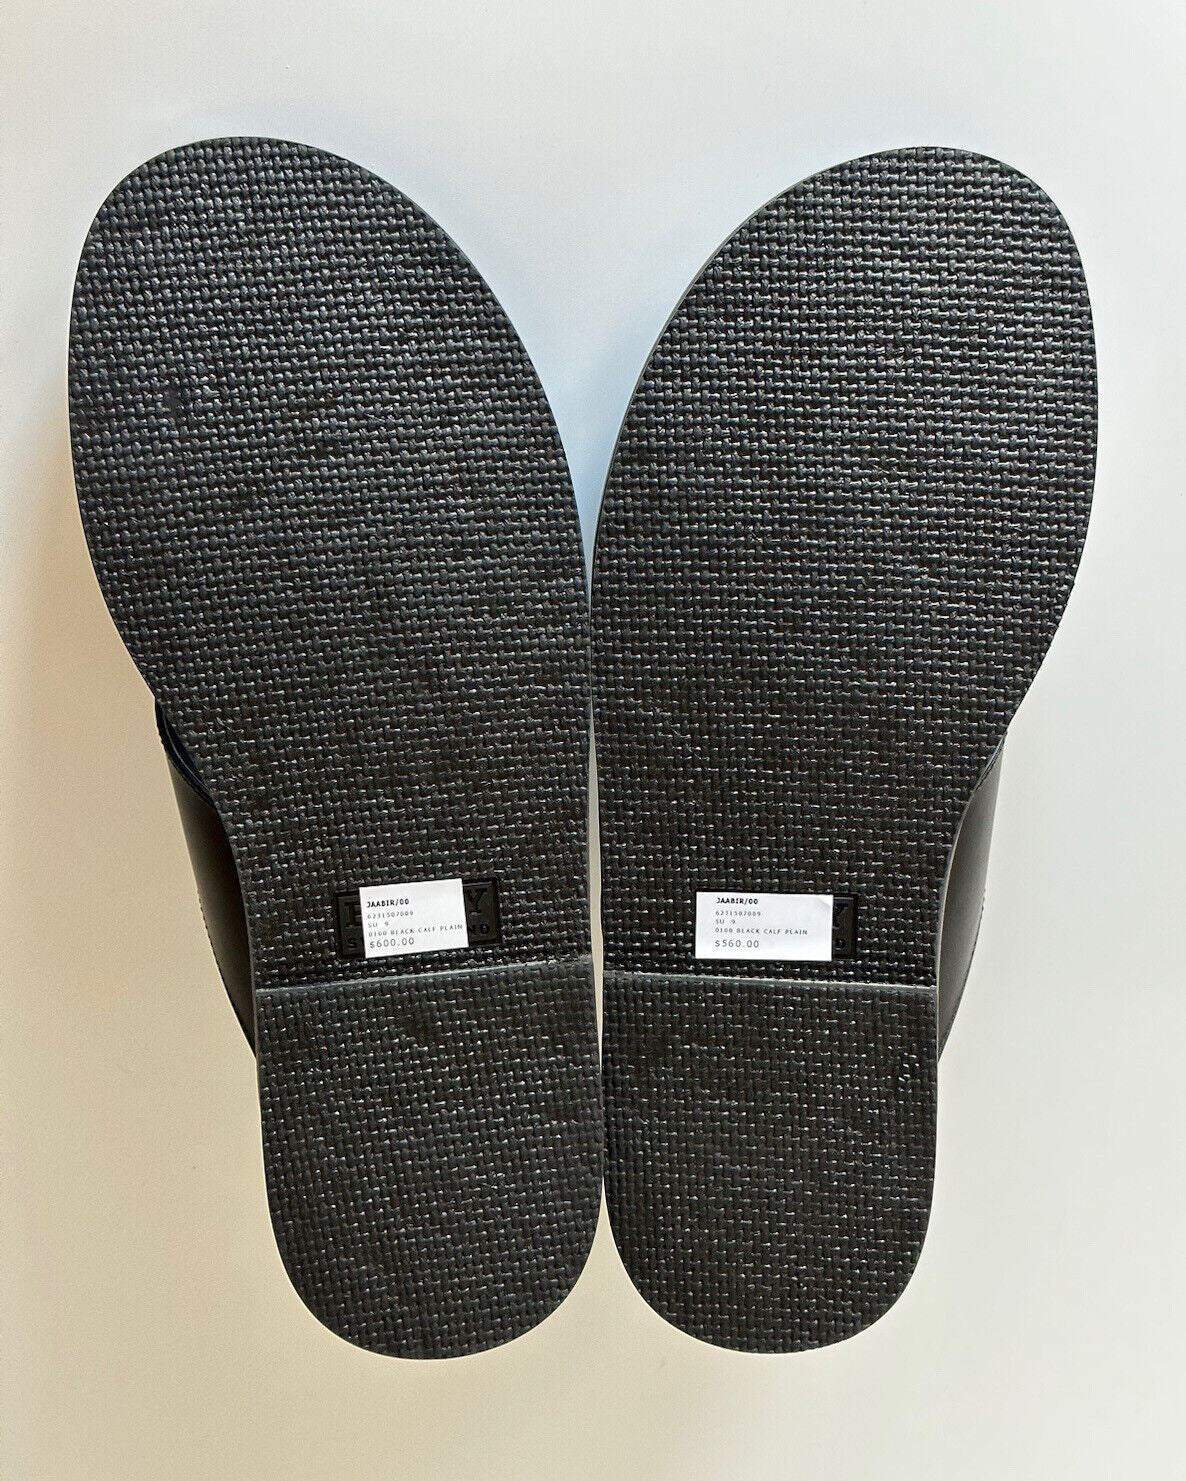 NIB Мужские черные кожаные шлепанцы Bally Jaabir за 560 долларов США 9,5 США (42,5) 6231507 